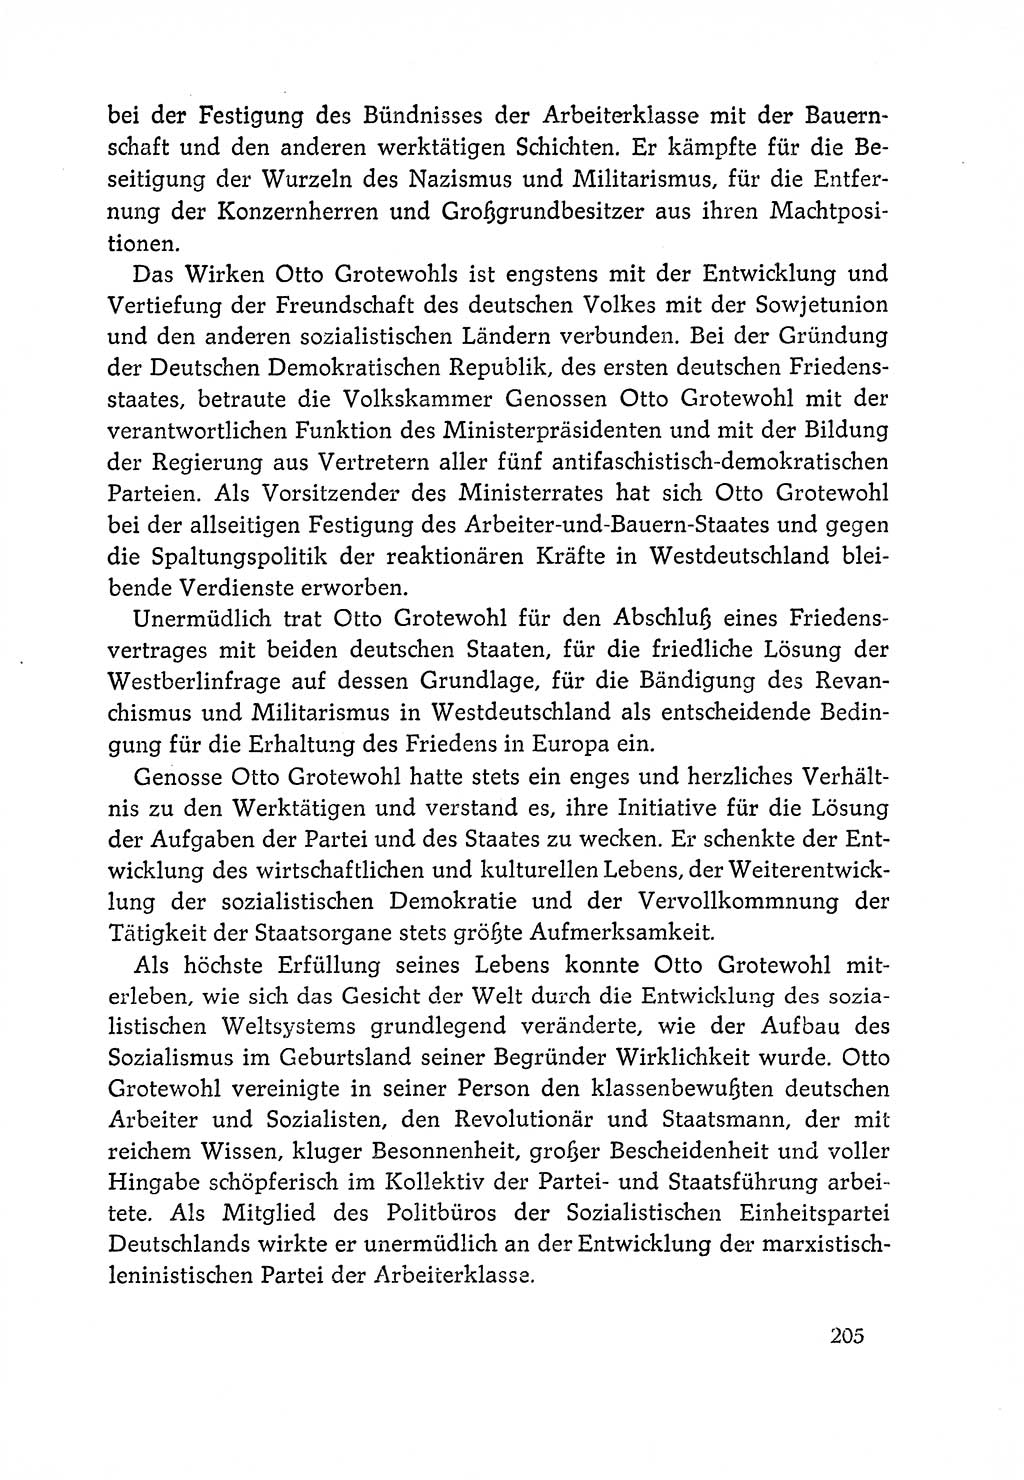 Dokumente der Sozialistischen Einheitspartei Deutschlands (SED) [Deutsche Demokratische Republik (DDR)] 1964-1965, Seite 205 (Dok. SED DDR 1964-1965, S. 205)